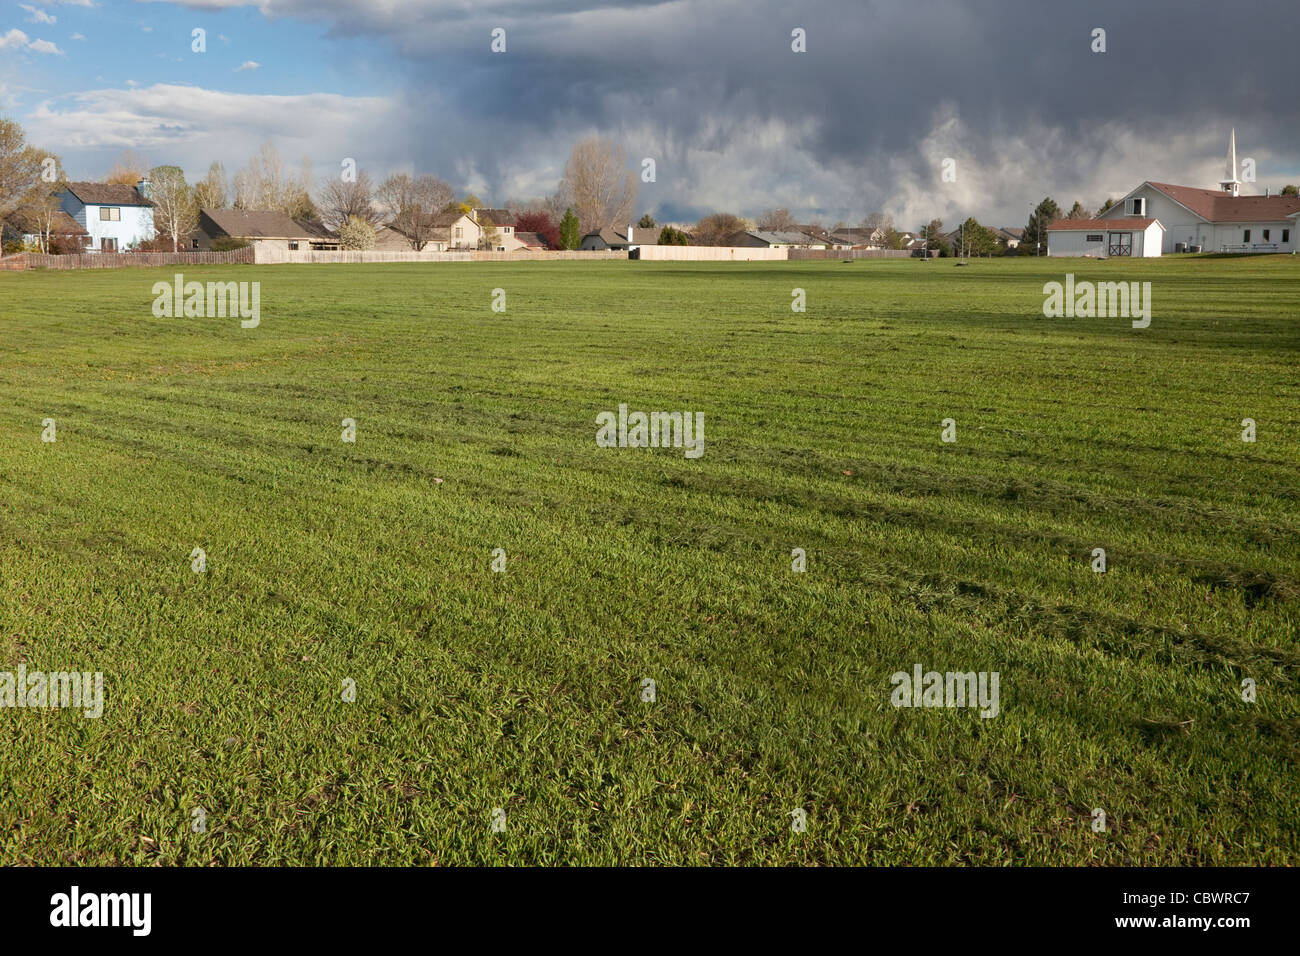 Appena falciata, ampio campo di erba con case residenziali, chiesa e pesanti nuvole temporalesche in background Foto Stock